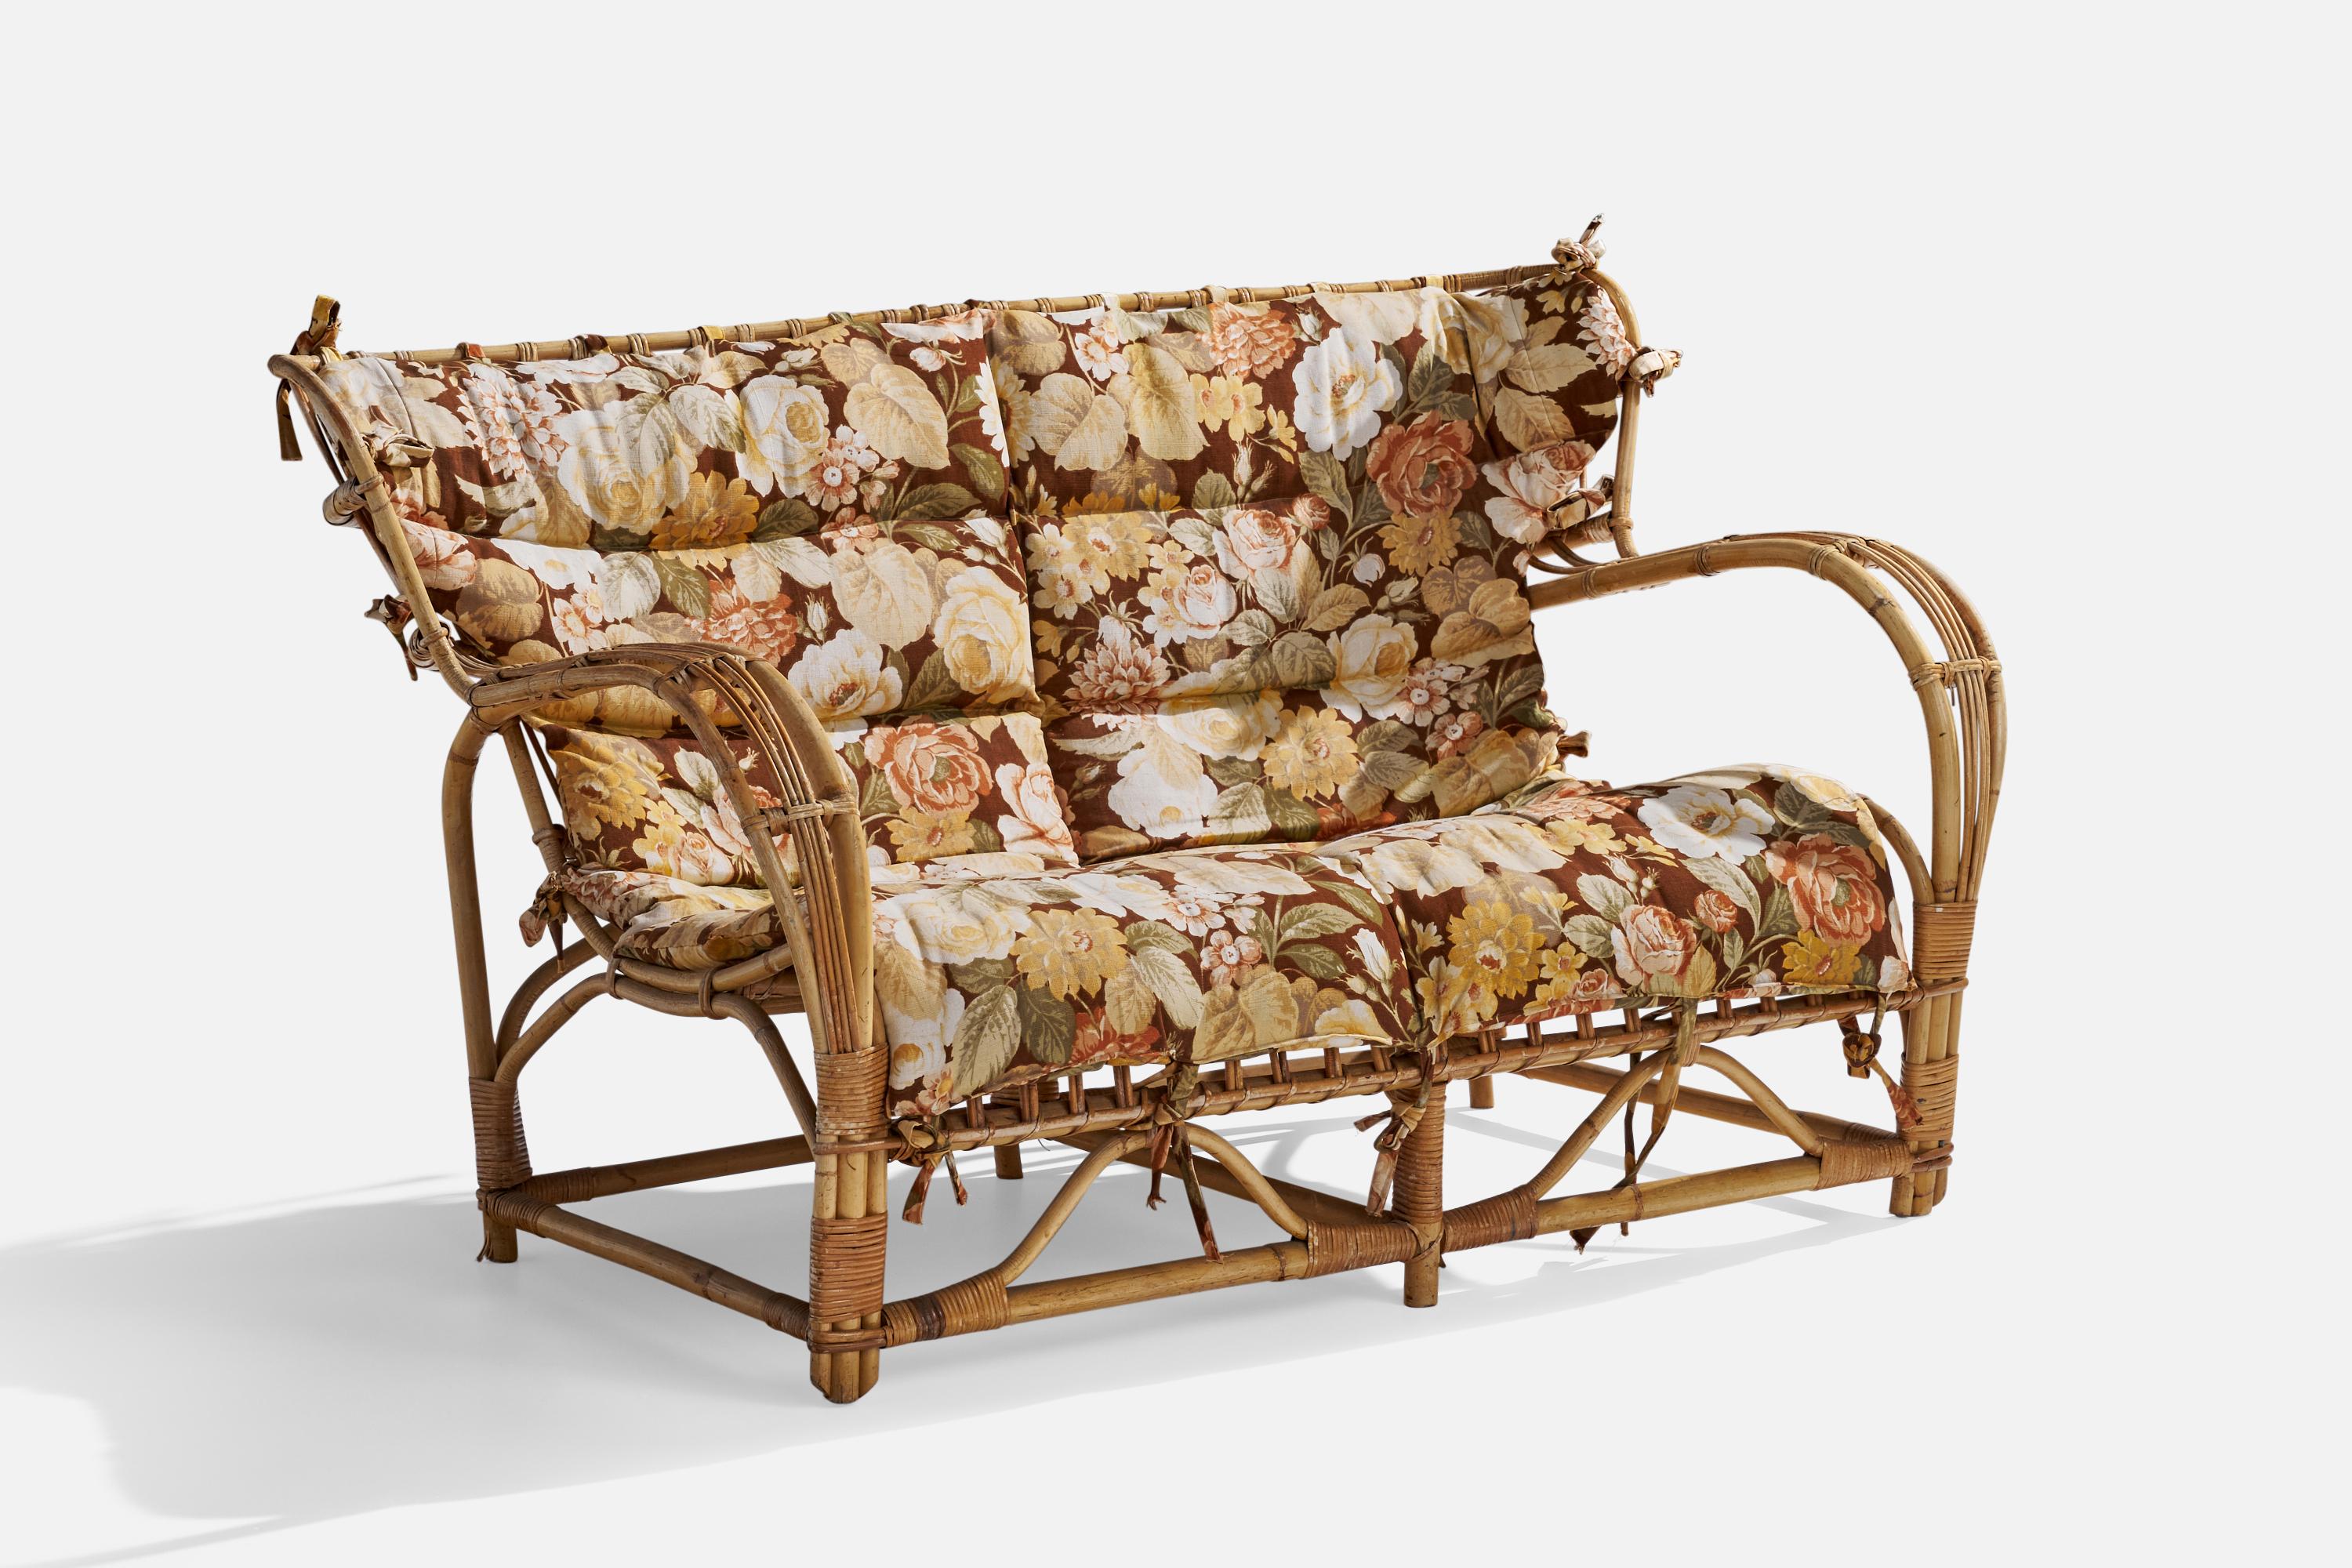 Canapé ou sofa en bambou moulé, rotin et tissu imprimé floral attribué à Viggo Boesen et produit en Suède, vers les années 1940.

Hauteur du siège 15.5